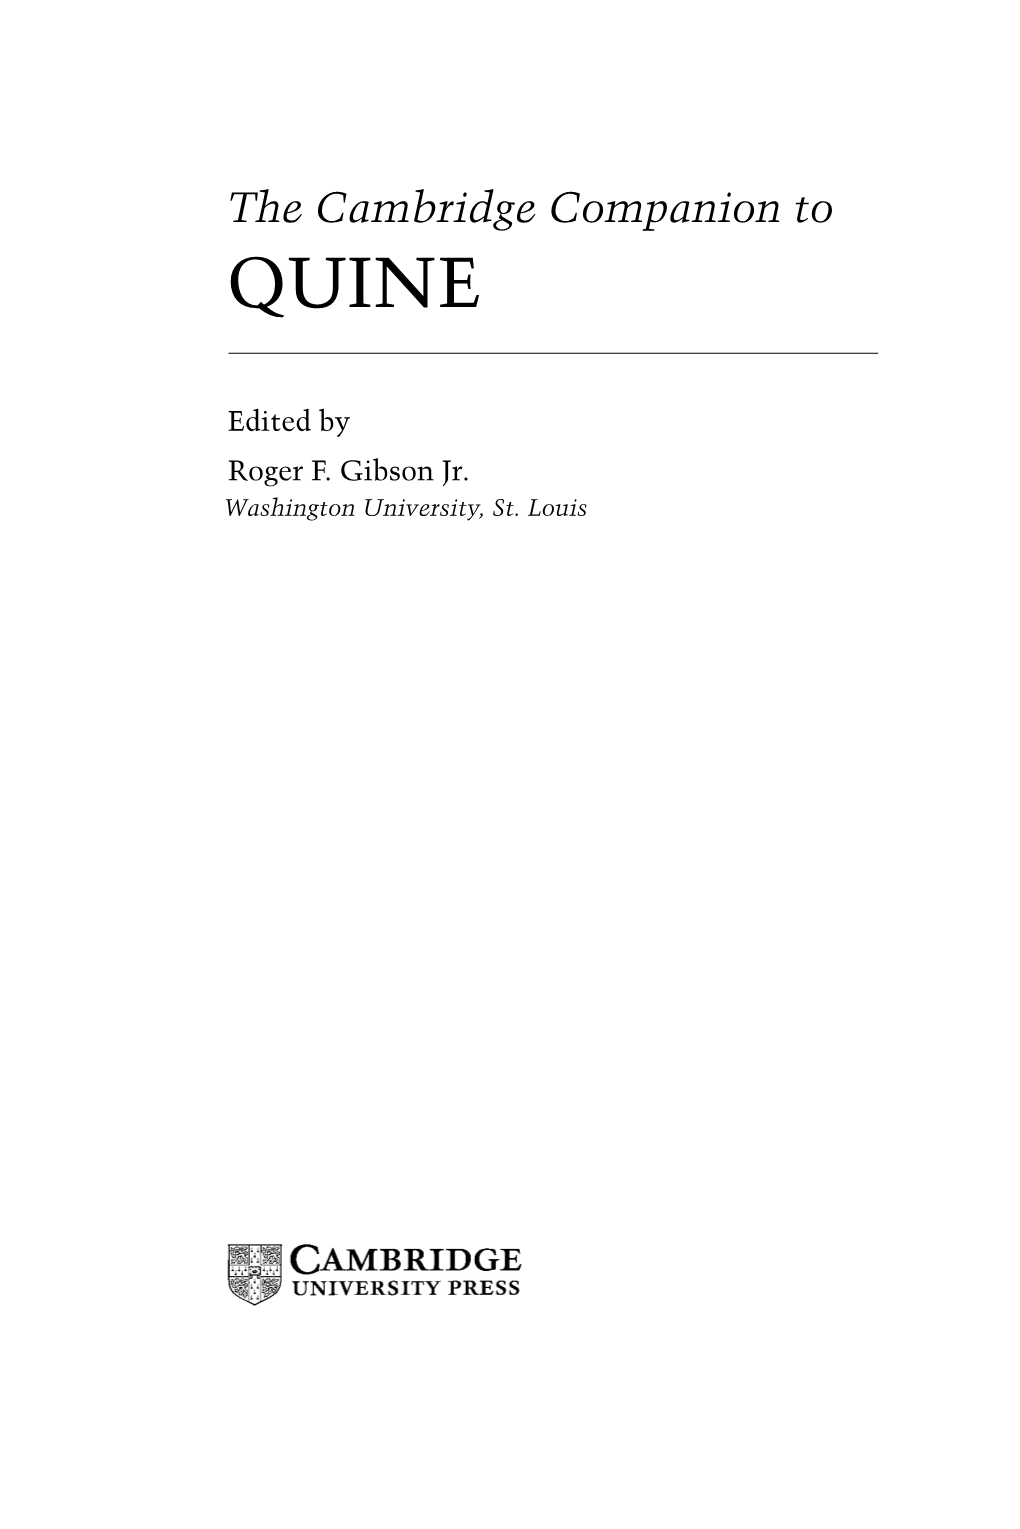 The Cambridge Companion to QUINE